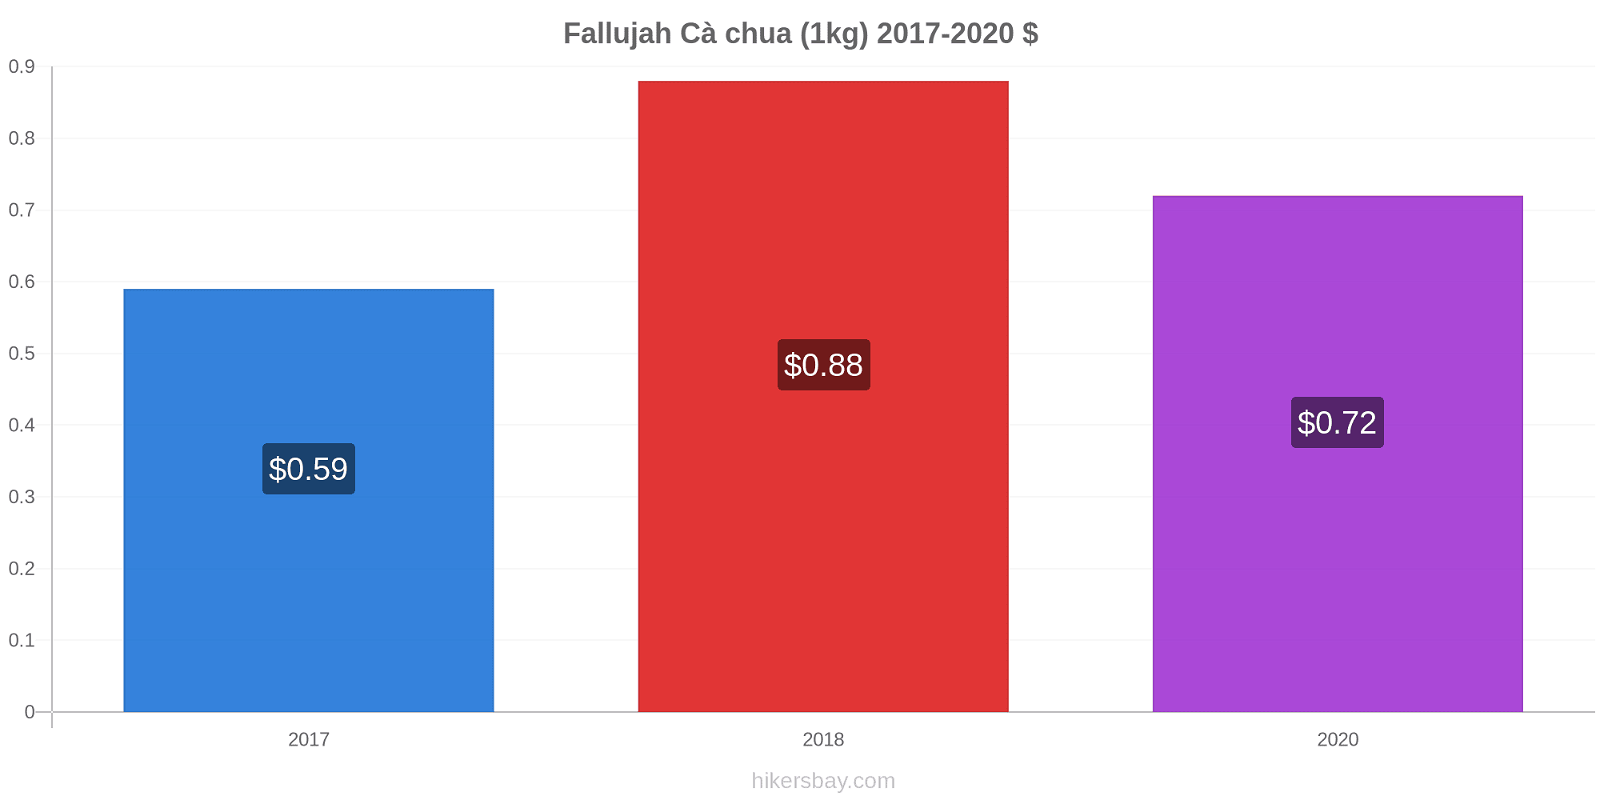 Fallujah thay đổi giá Cà chua (1kg) hikersbay.com